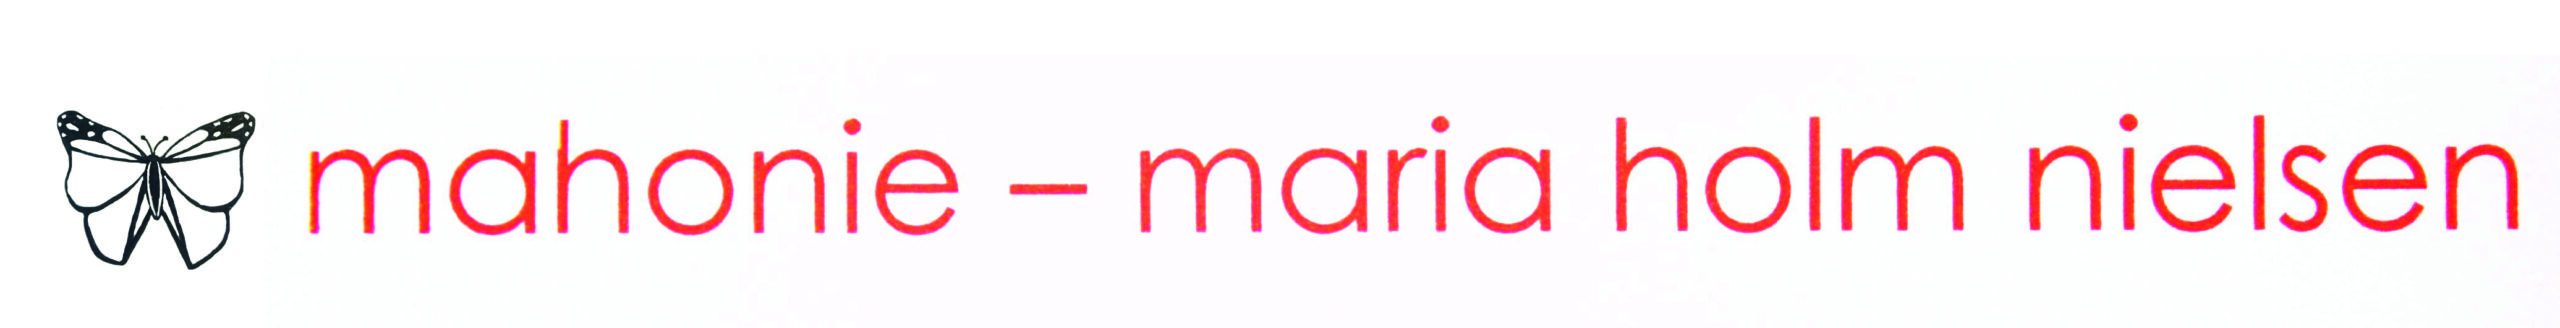 Logo mahonie - maria holm nielsen